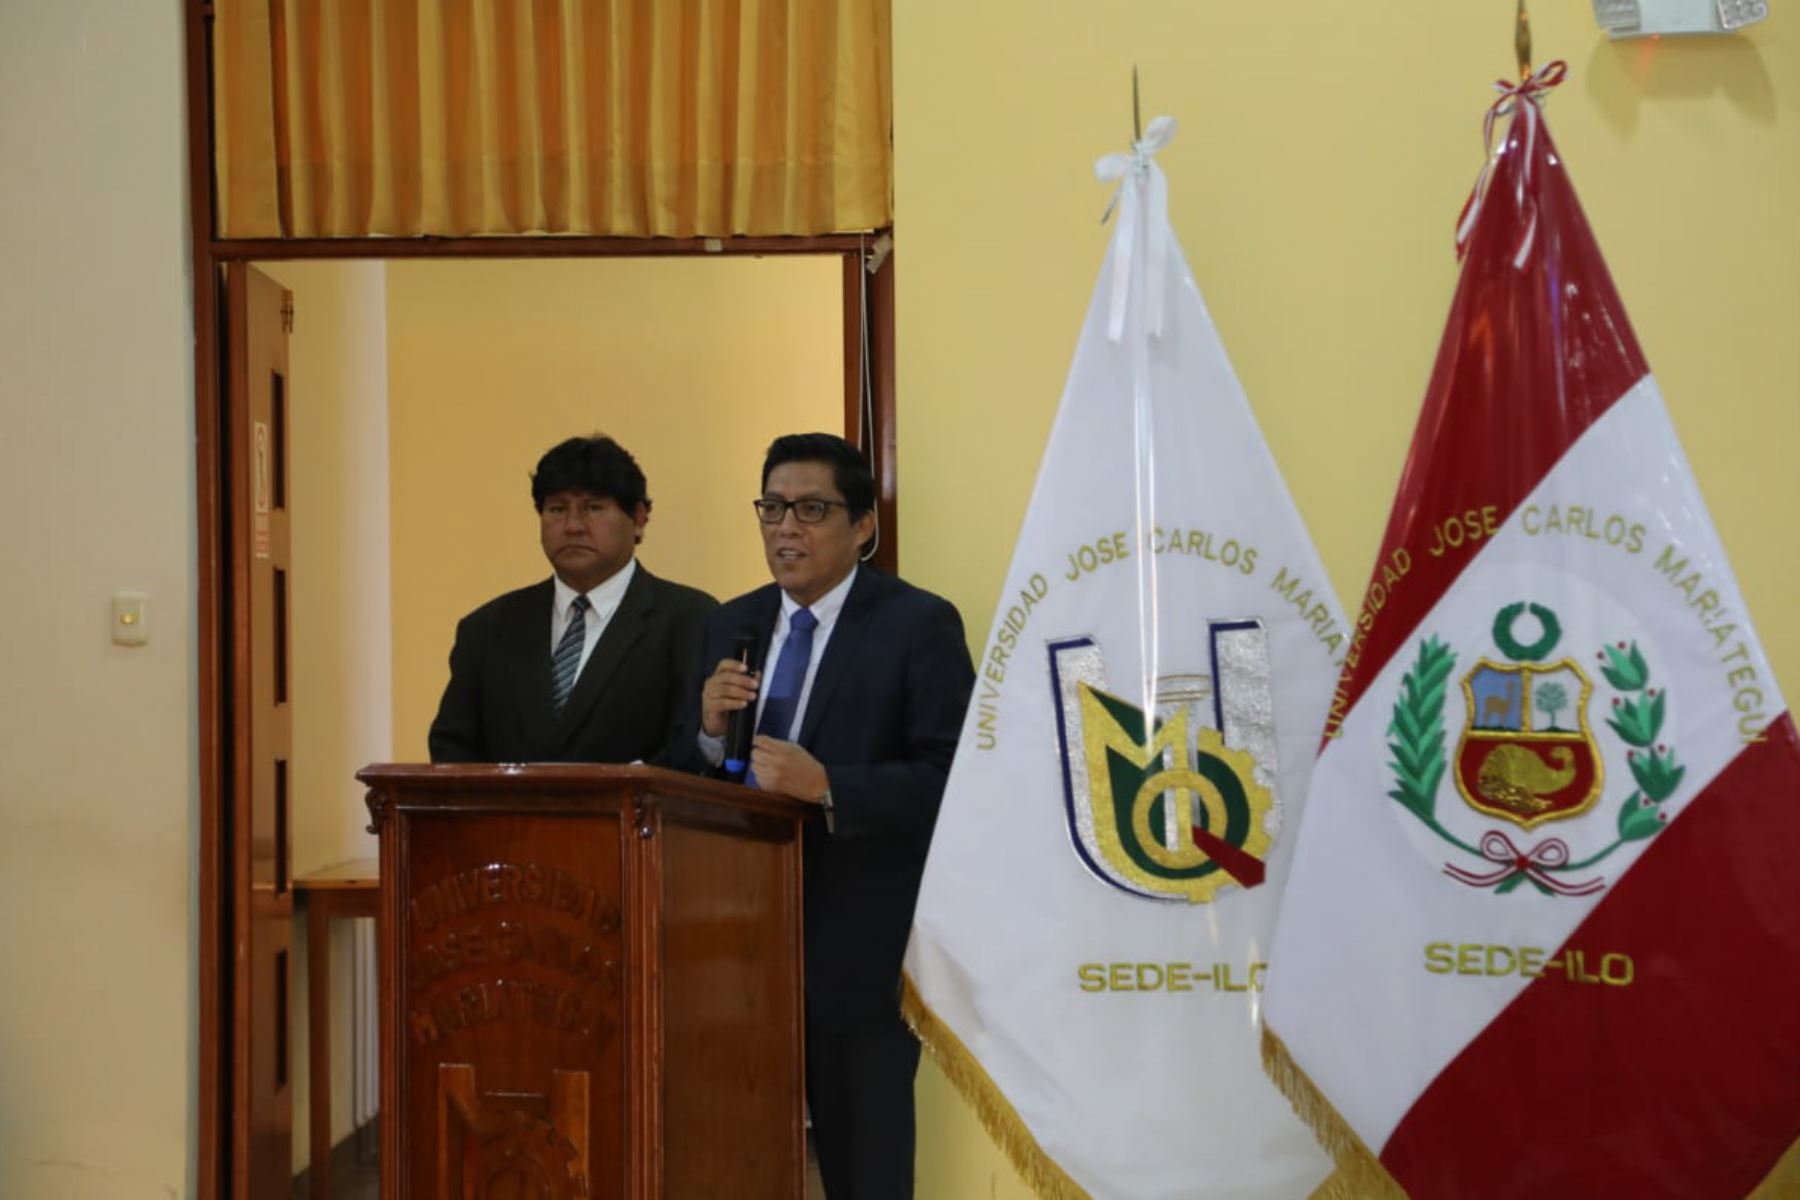 Ministro de Justicia, Vicente Zeballos, inauguró la conferencia “Lavado de Activos y Trata de Personas en la Criminalidad Organizada”, que se desarrolló en la Universidad José Carlos Mariátegui de Ilo